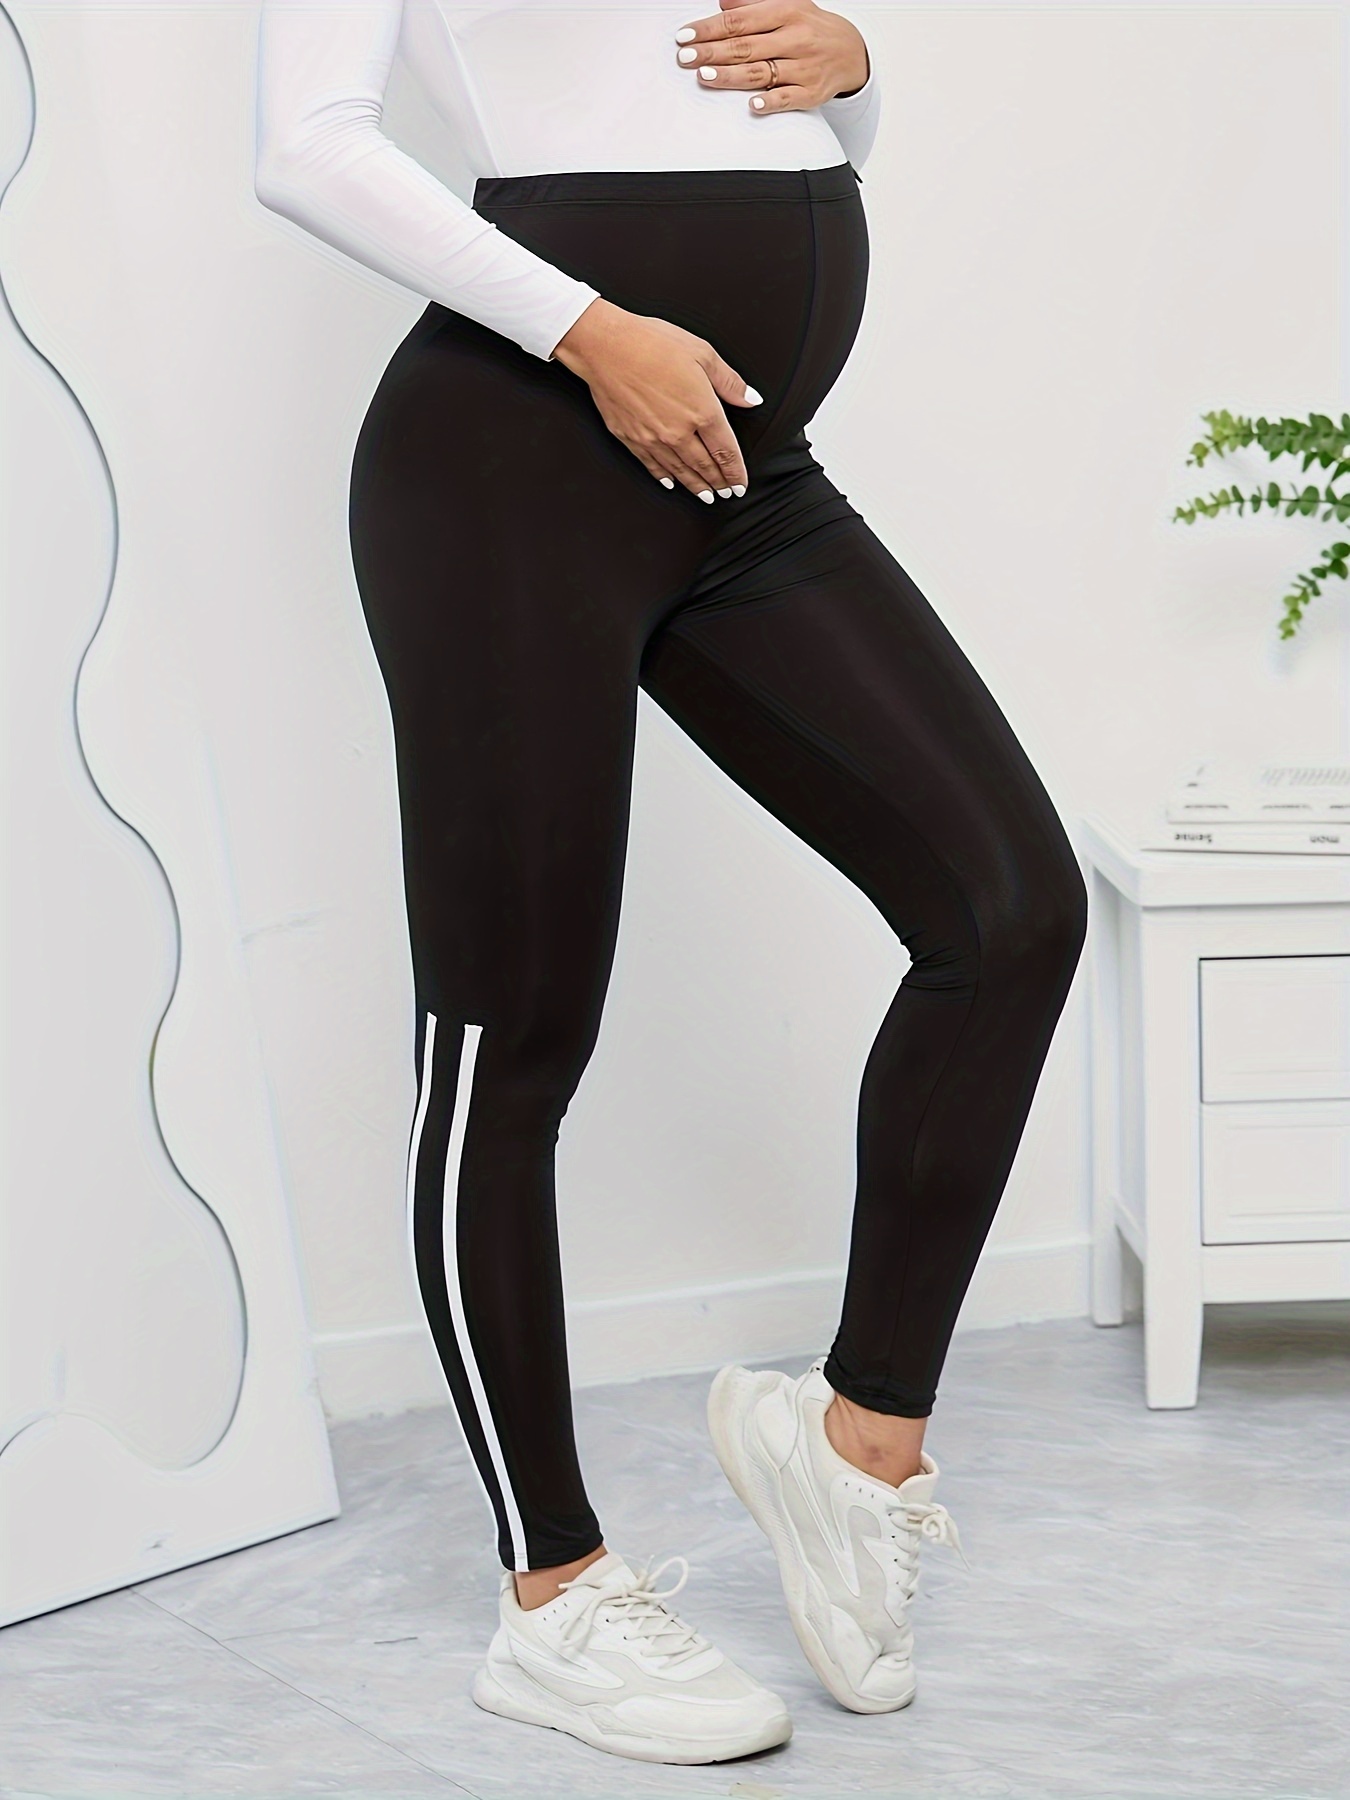 SHEIN A maternidade usa legging esportiva simples com bolso para